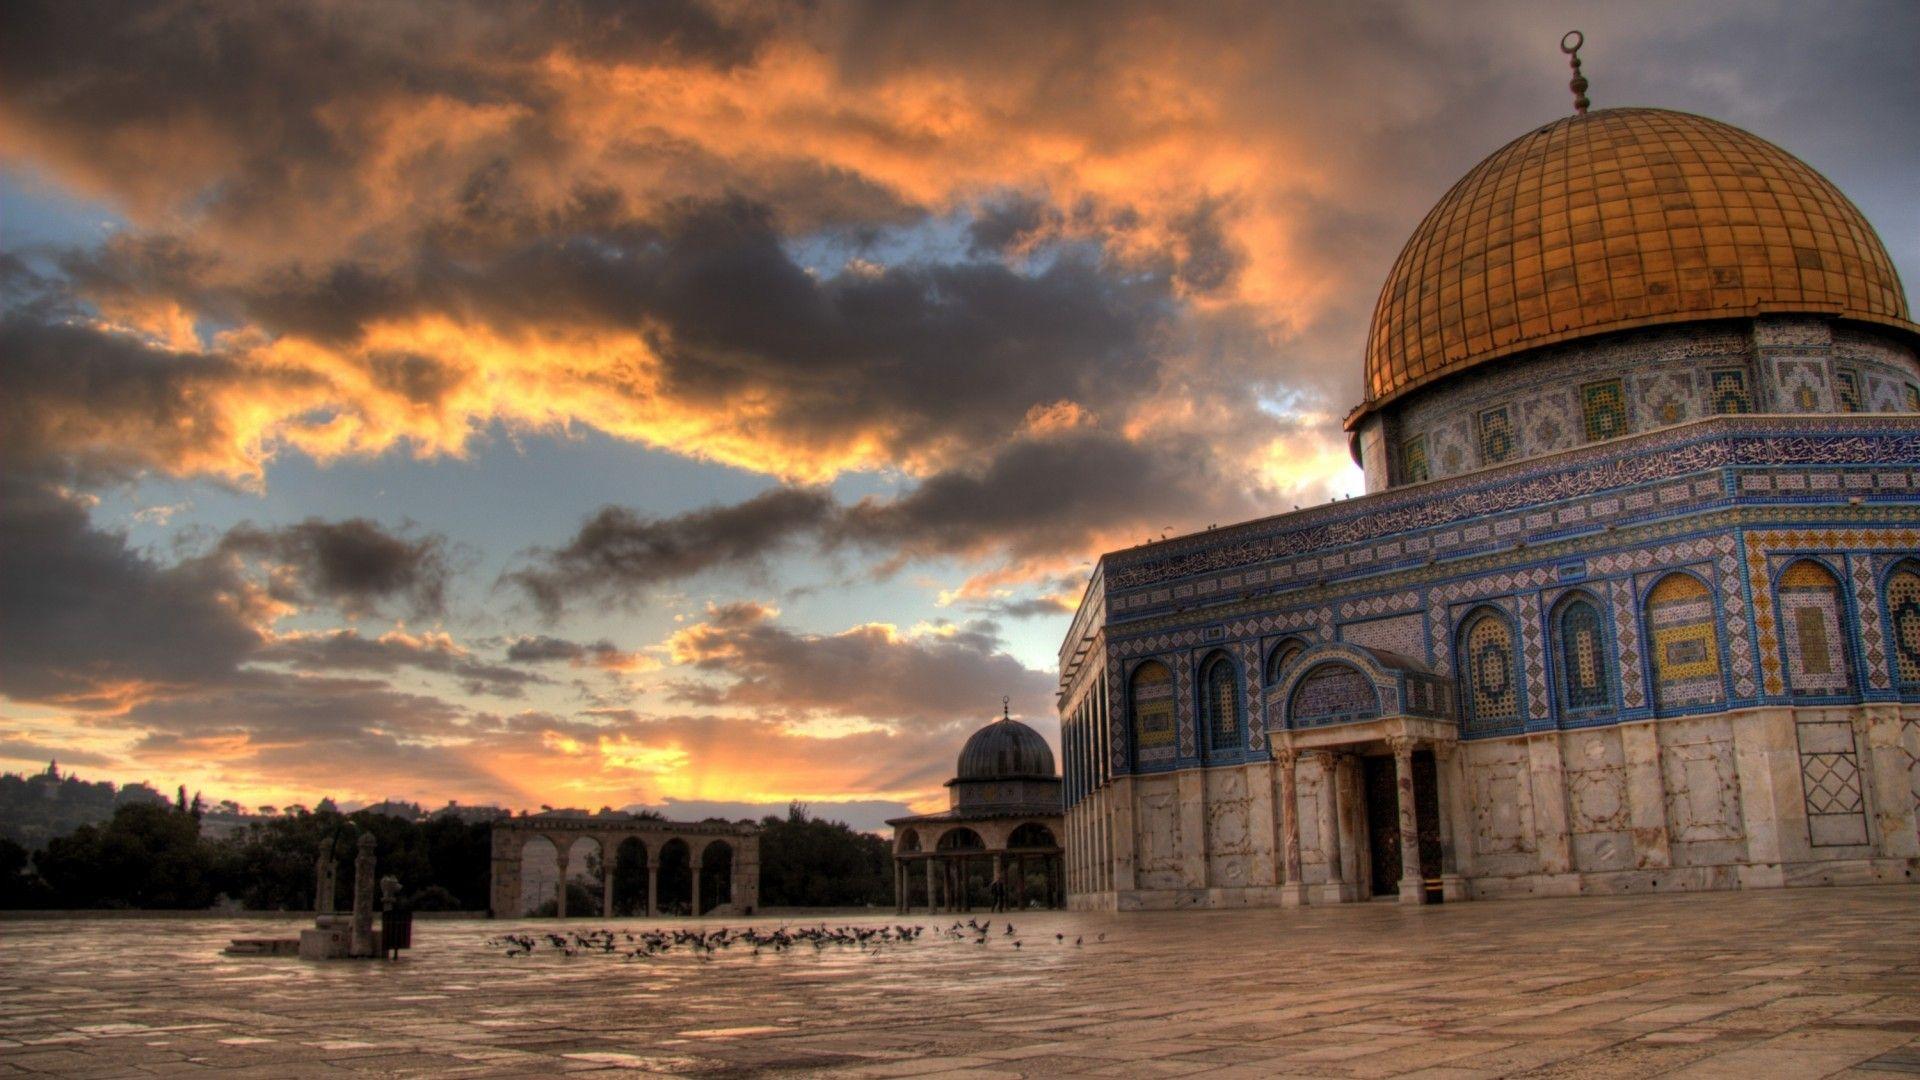 1,000+ Free Jerusalem & Israel Images - Pixabay